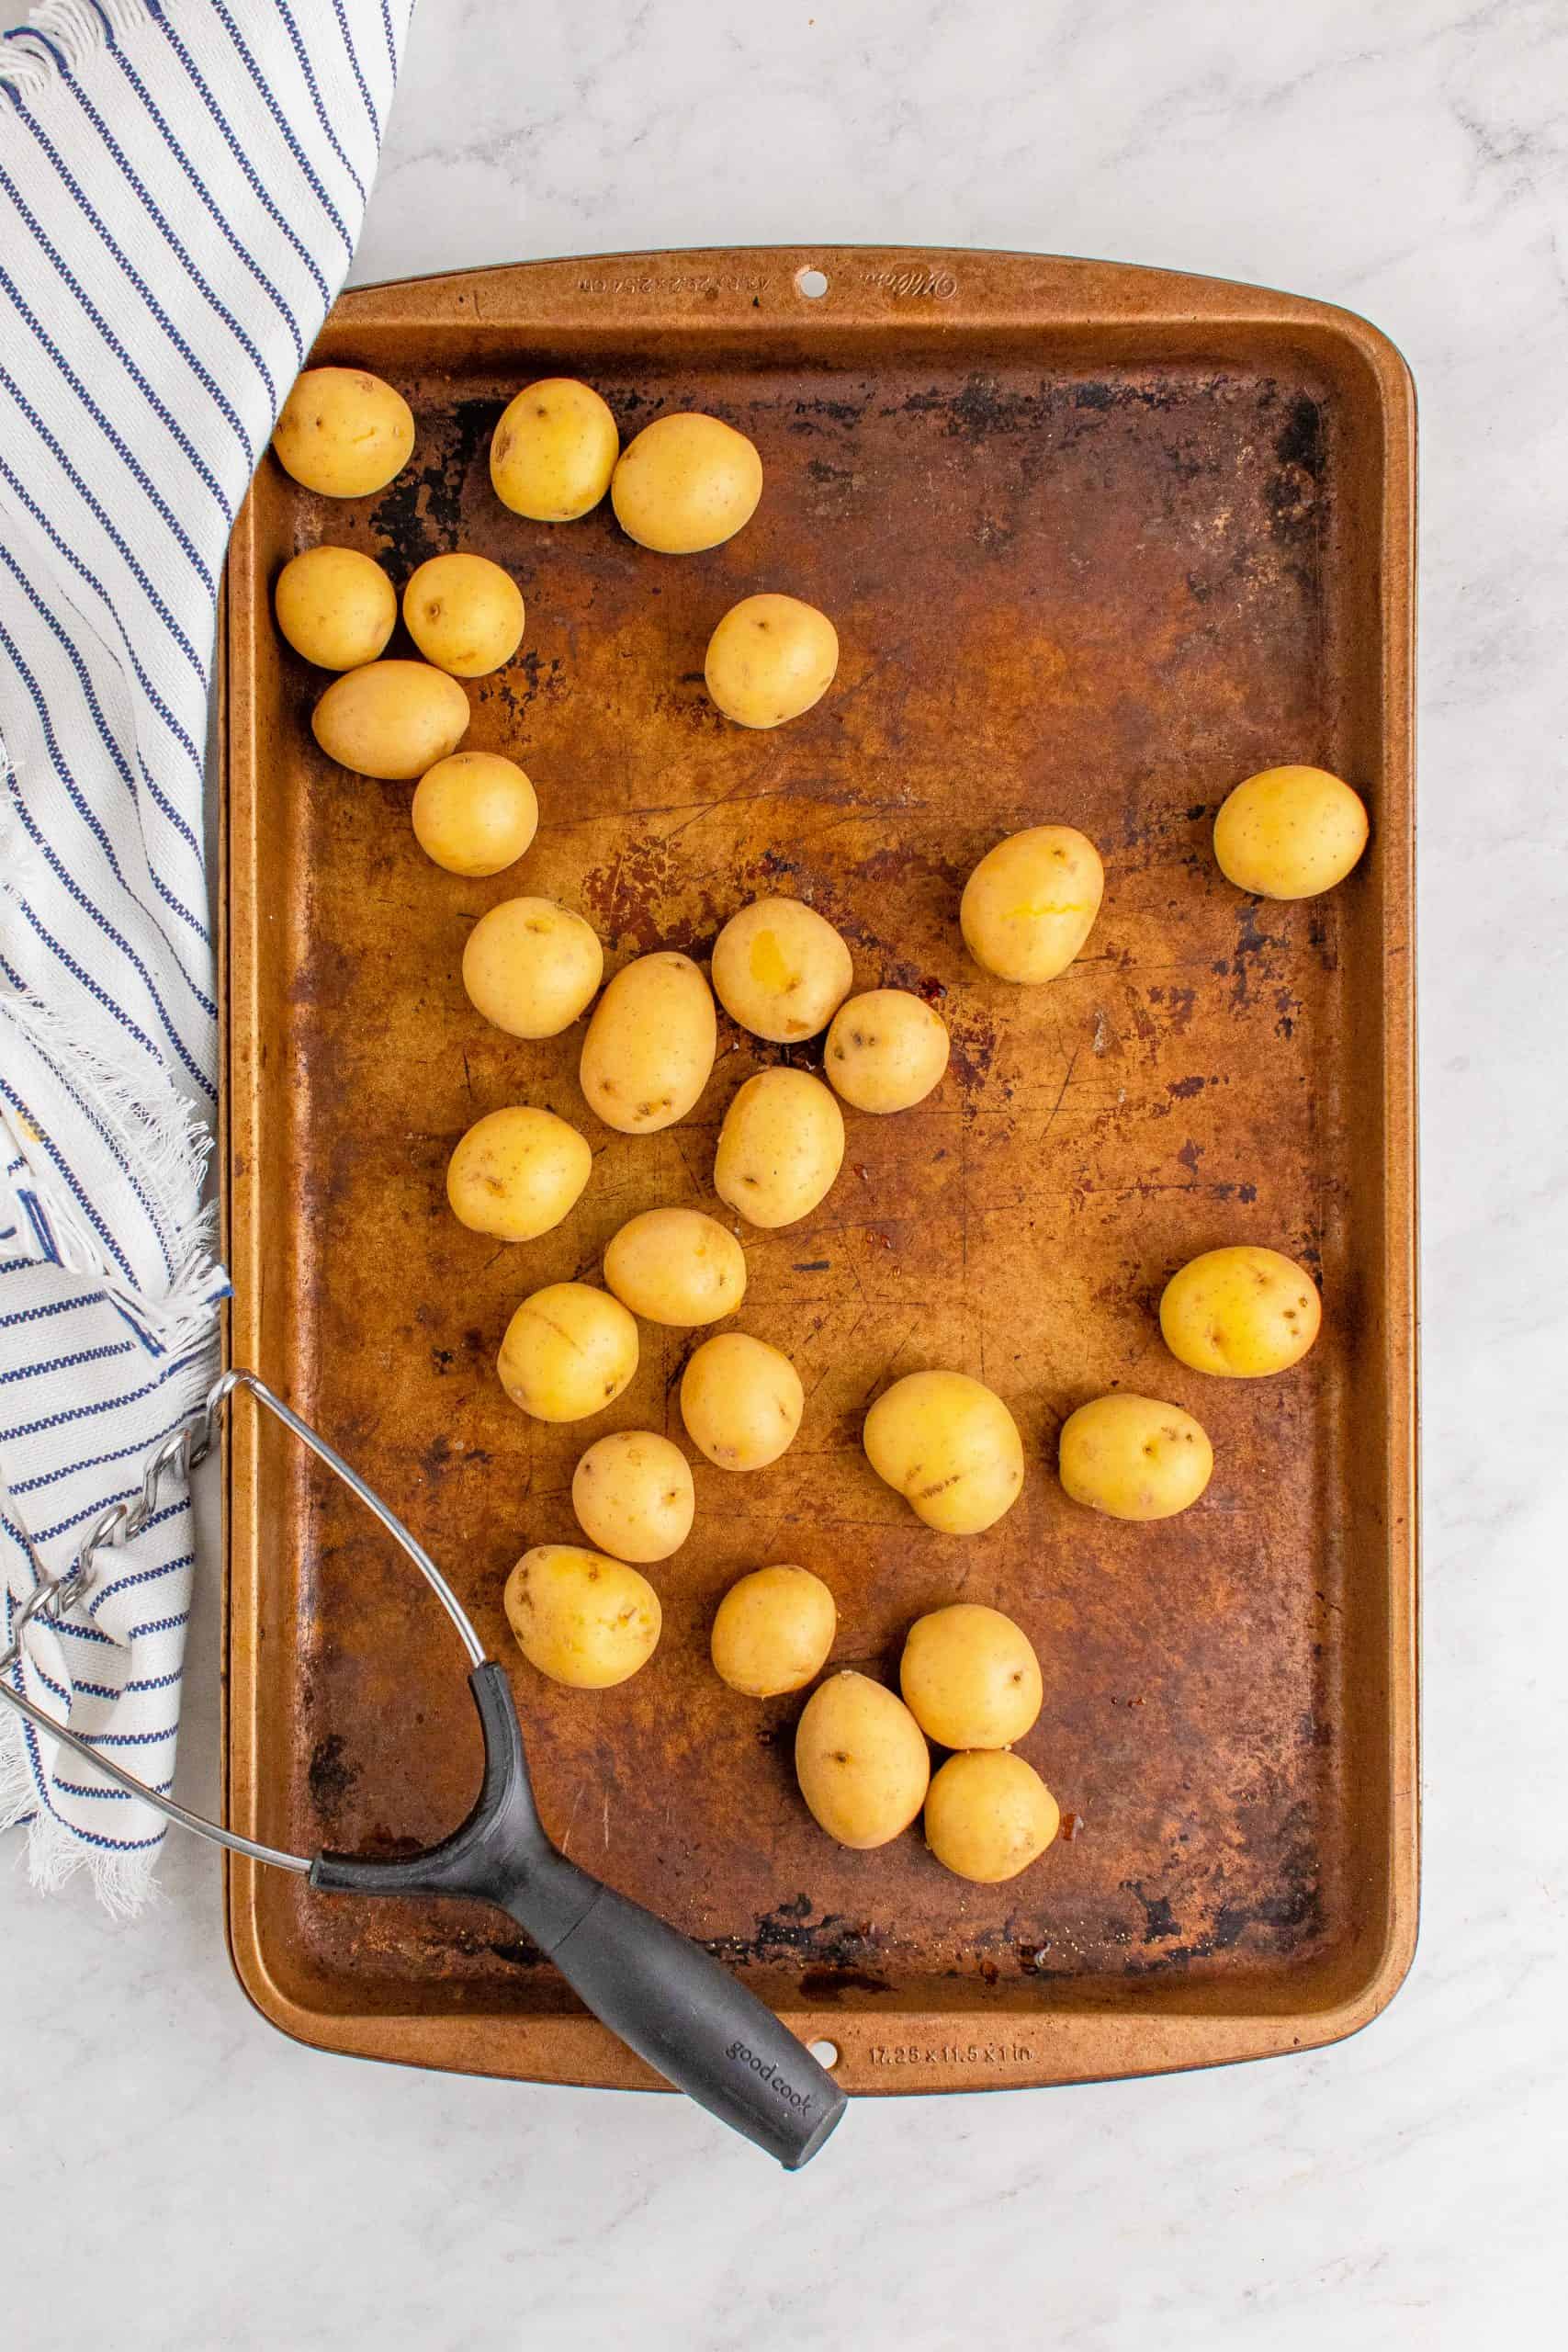 Potatoes on a copper sheet pan.